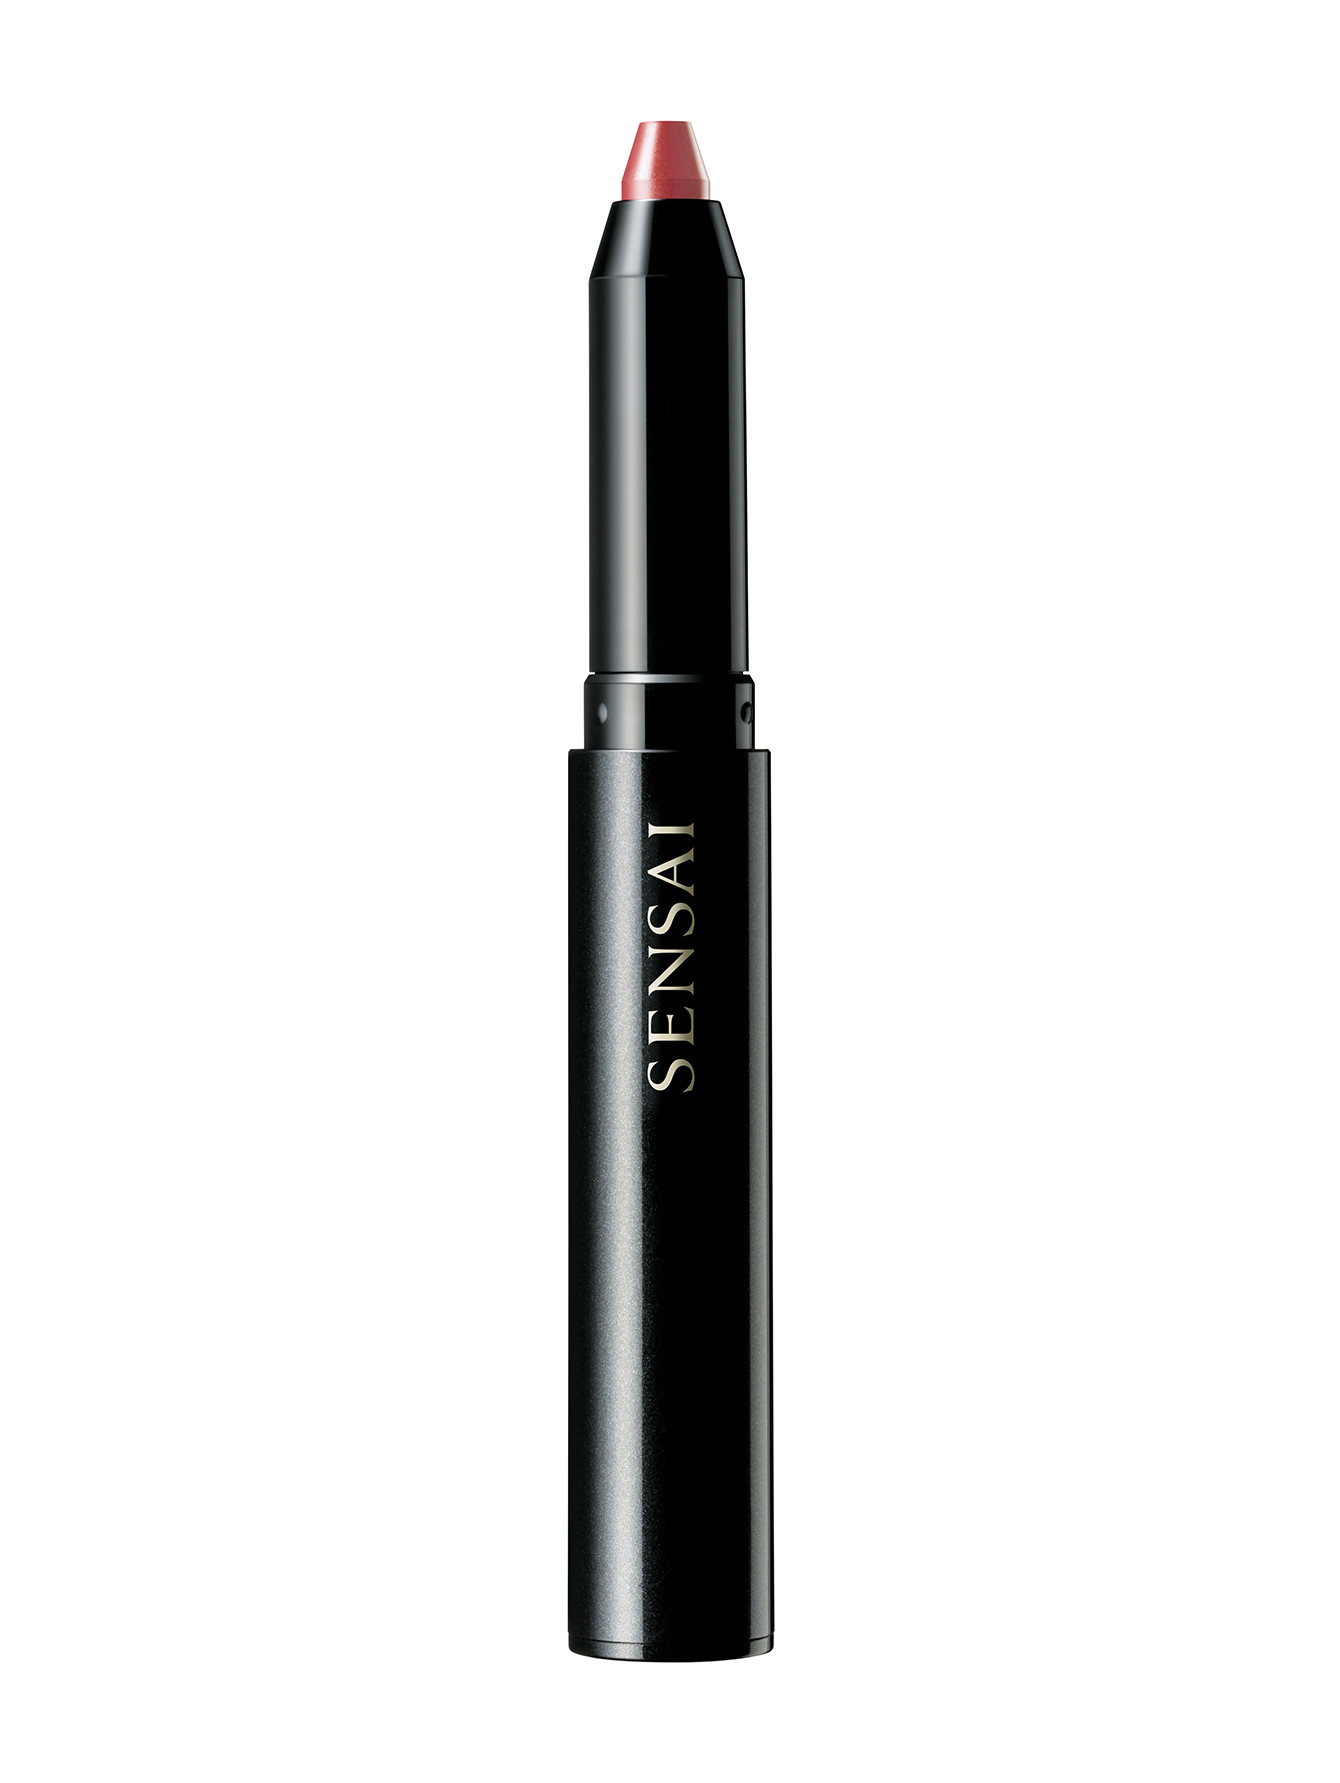 Помада-карандаш для губ - №05, Sensai Silky Design - Общий вид